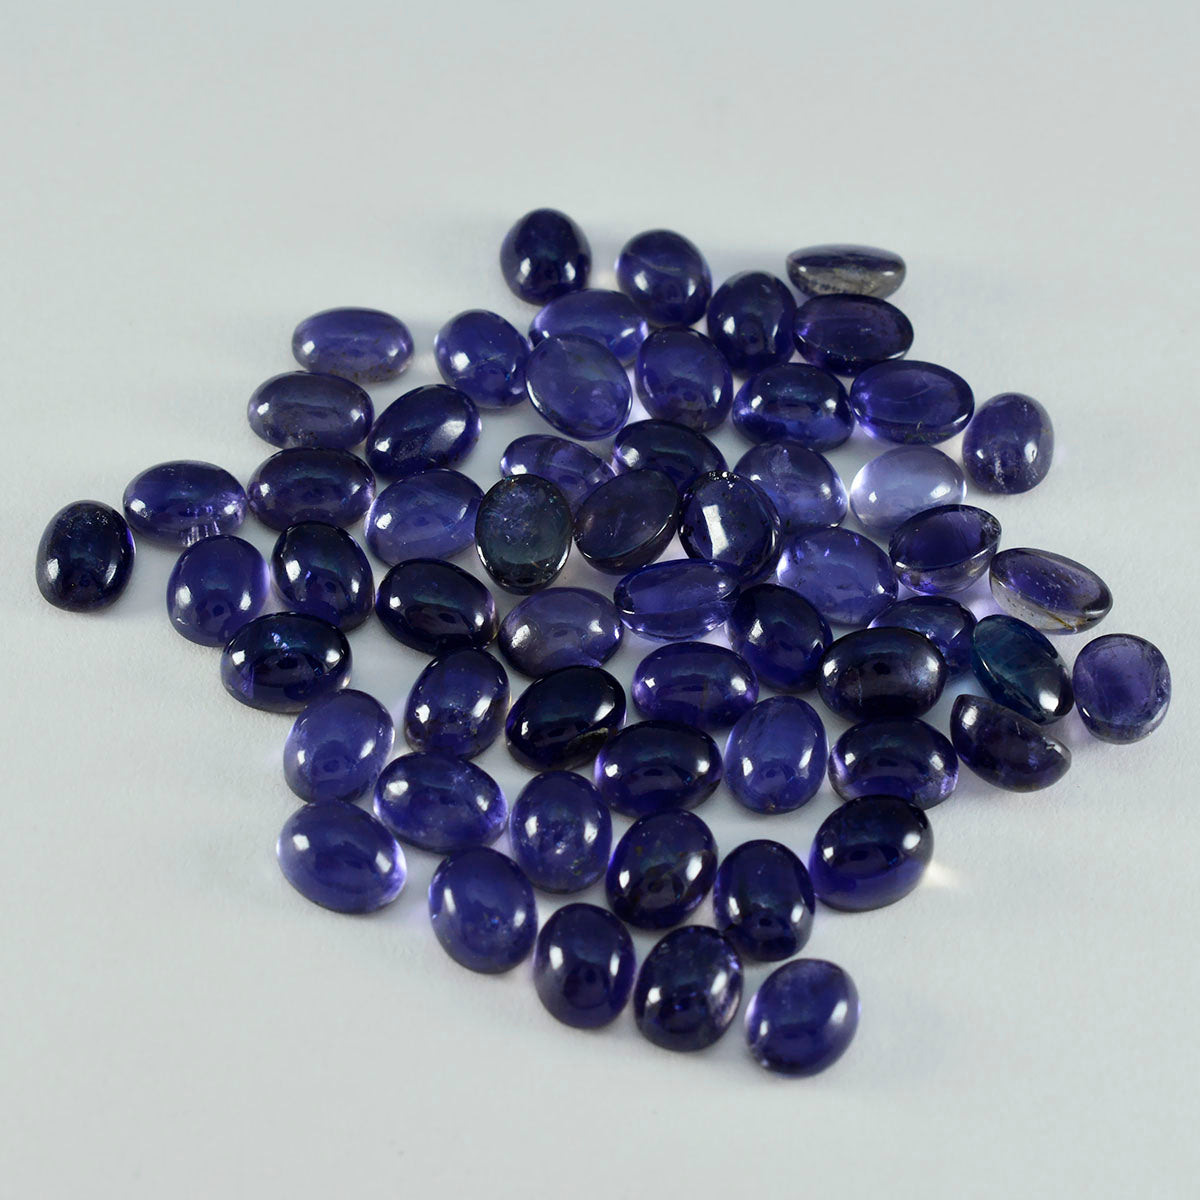 riyogems 1шт синий иолит кабошон 4x6 мм овальной формы красивый качественный драгоценный камень